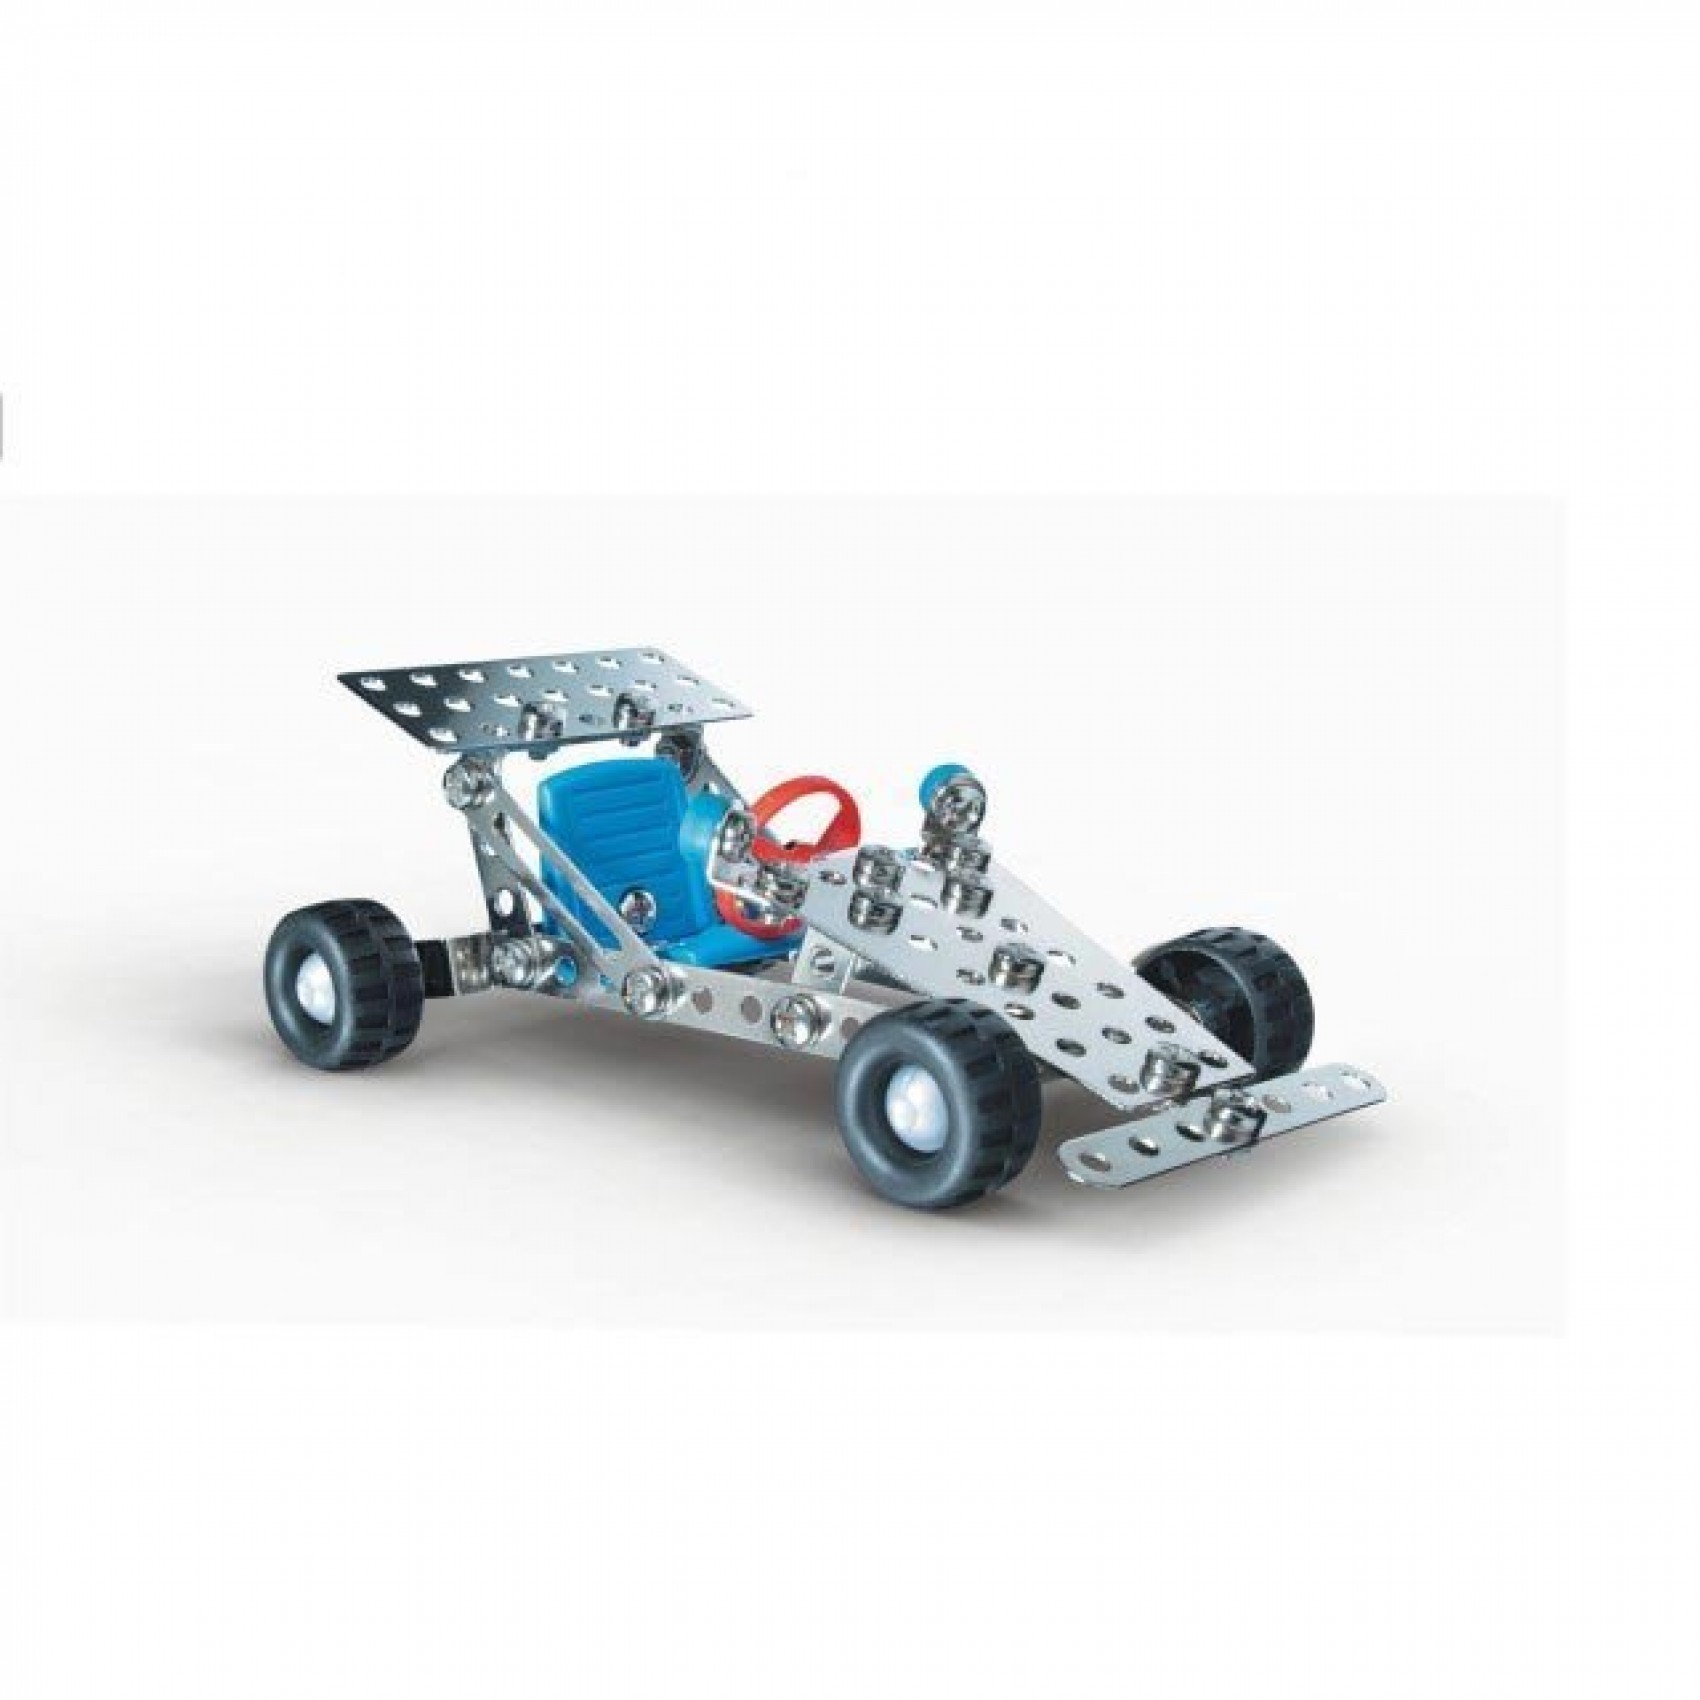 Eitech voiture 4x4 jeu de construction mécanique en métal Enfant 8 ans et +  - Un jeux des jouets